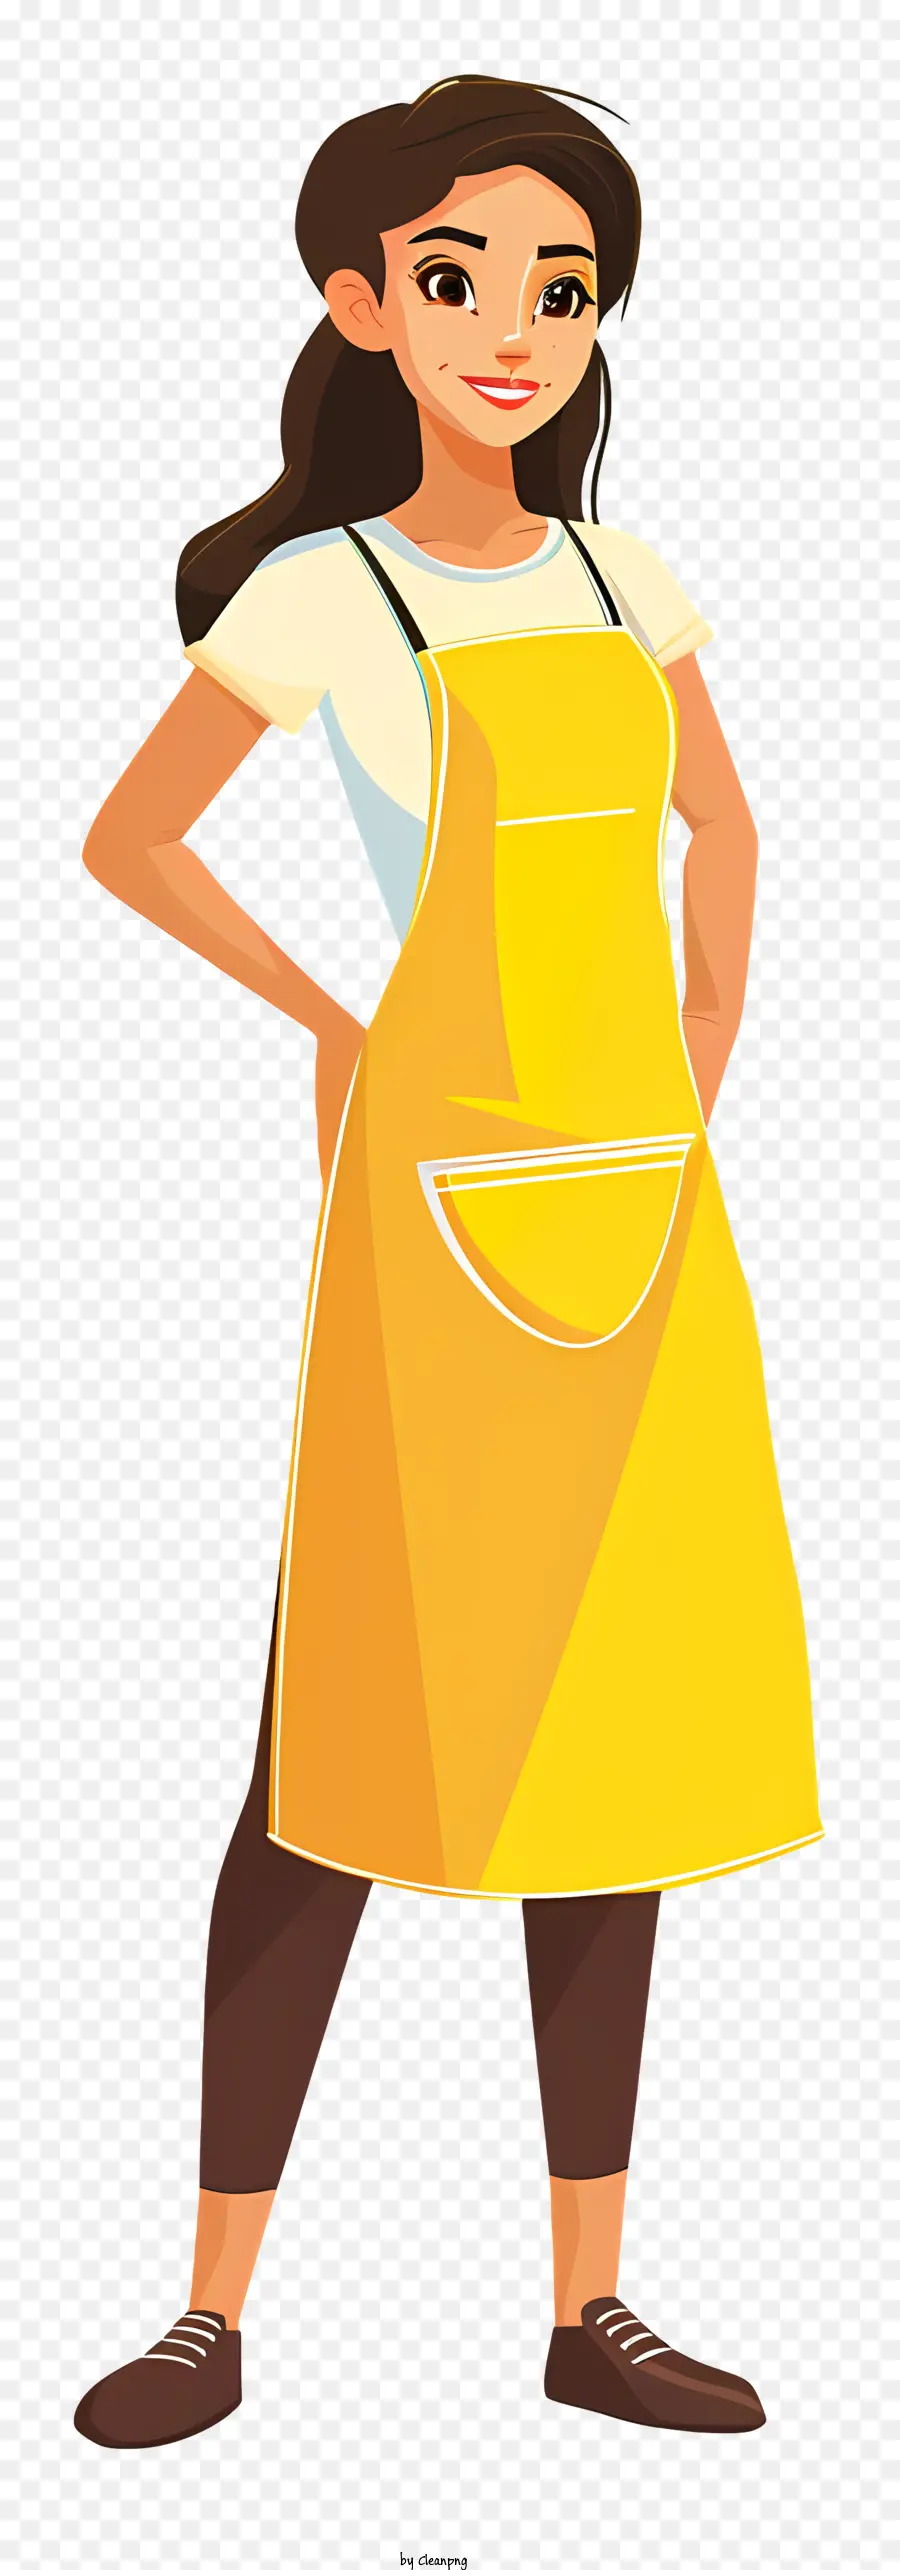 kochende Frau Cartoon Schürze Frau Gelb lächelnd - Frau in gelber Schürze lächelte vor der Kamera